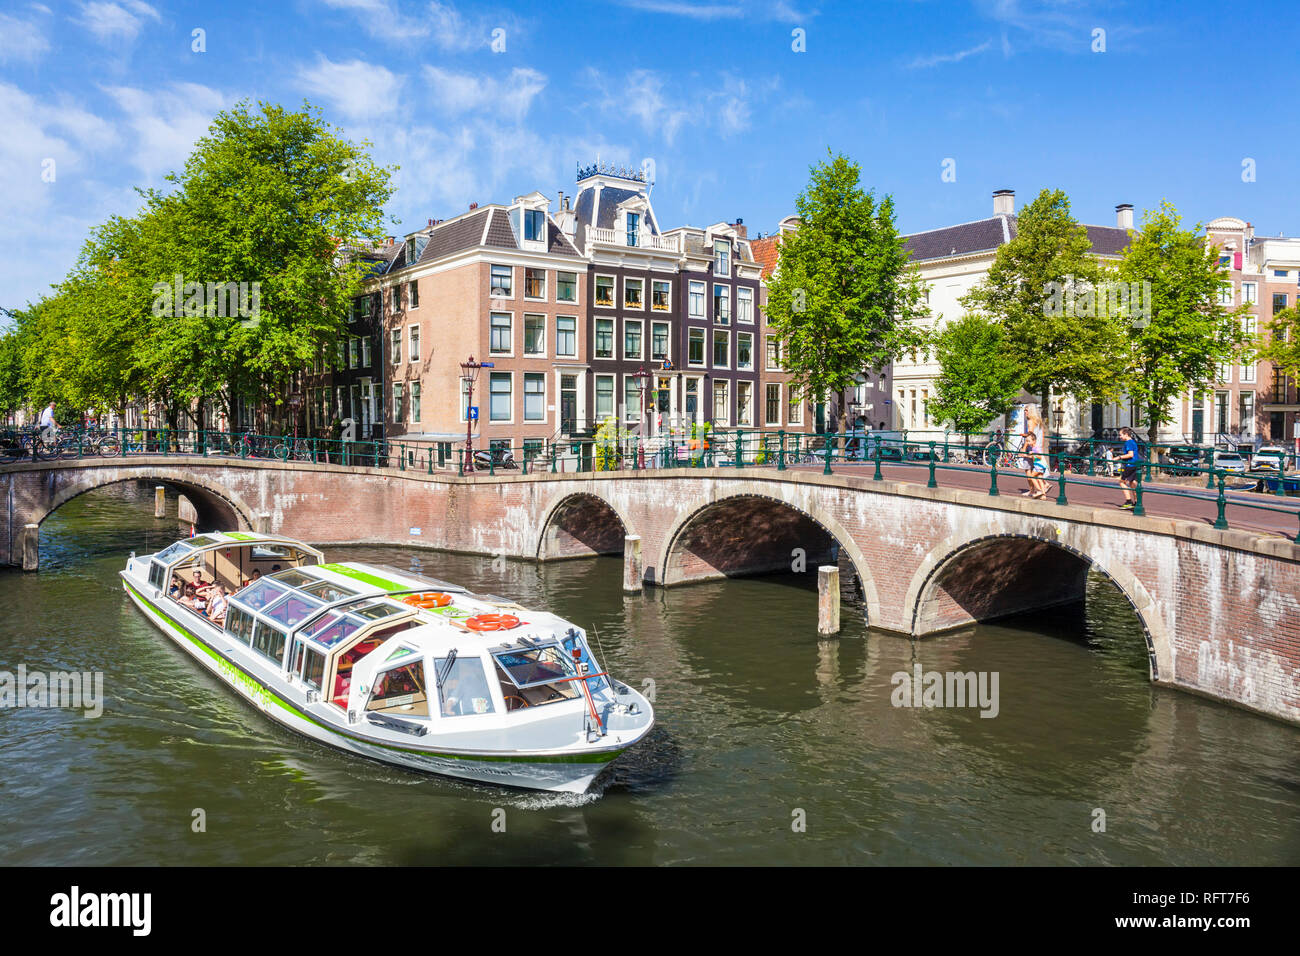 Excursión por los canales y puentes de barco en la intersección de las calles Canal y canal Keizergracht Leidsegracht, Amsterdam, Holanda Septentrional, Holanda, Europa Foto de stock